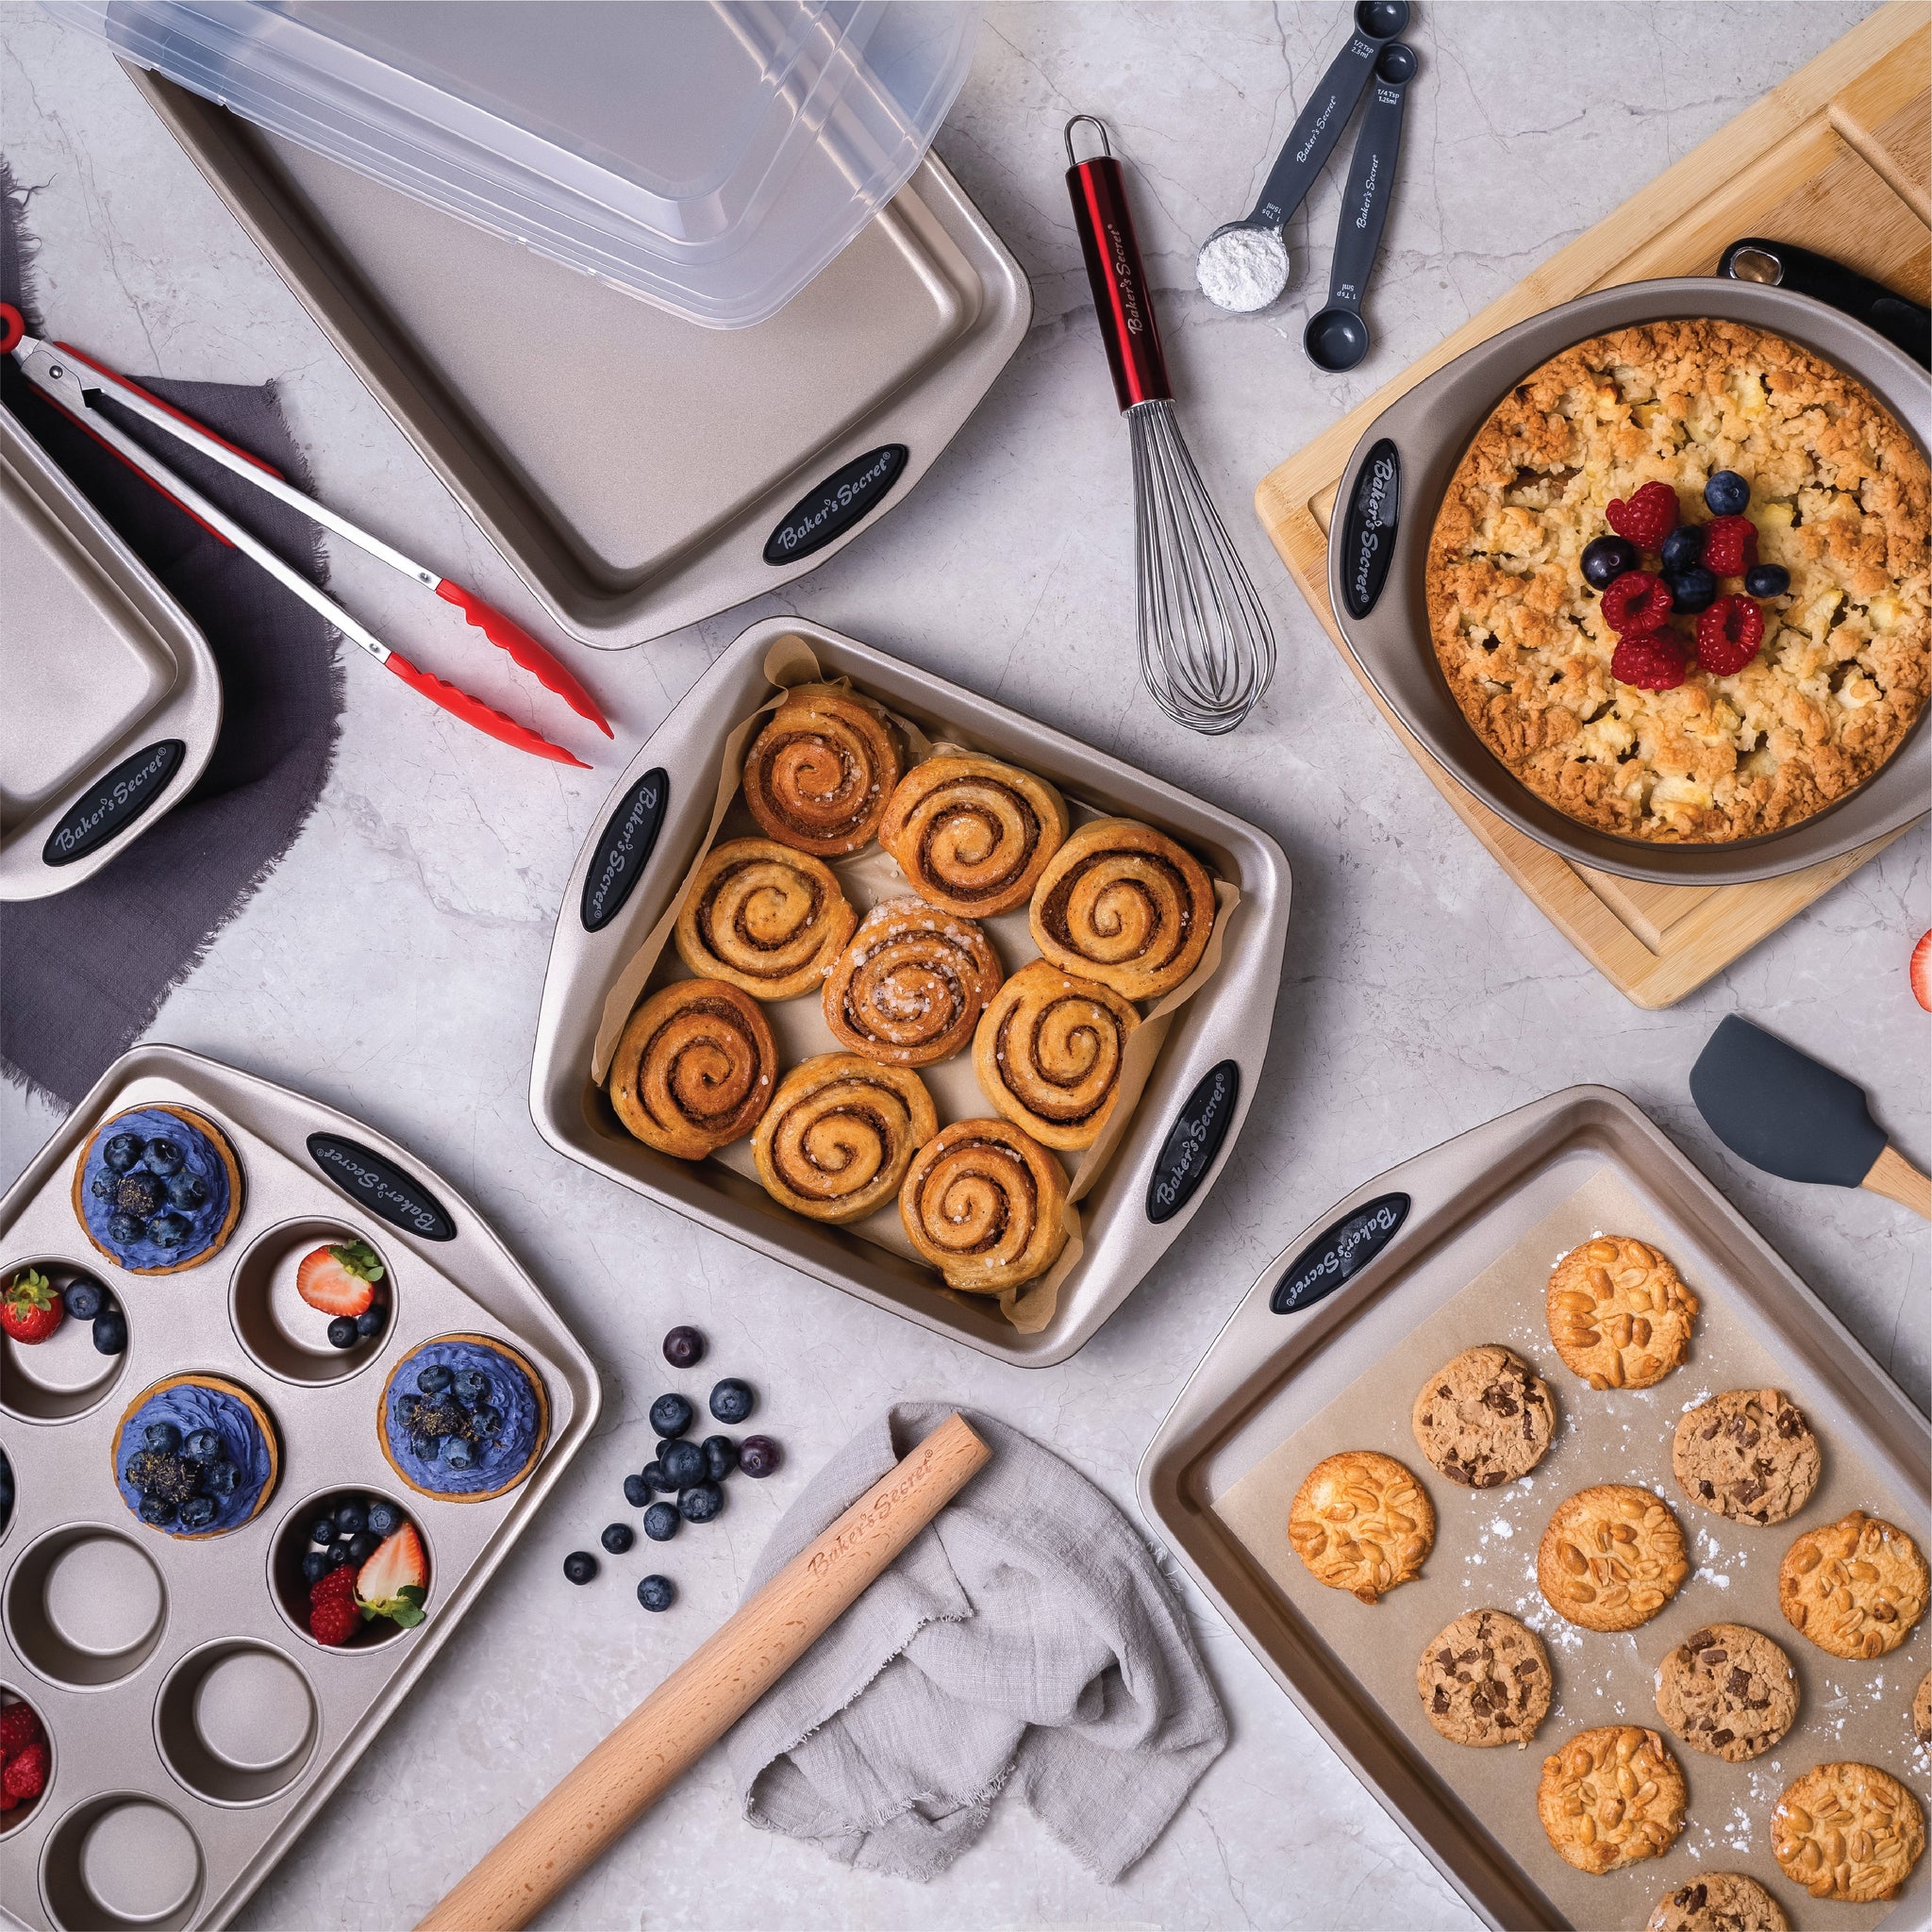 Baker's Secret  Bakeware, Baking Pans & More